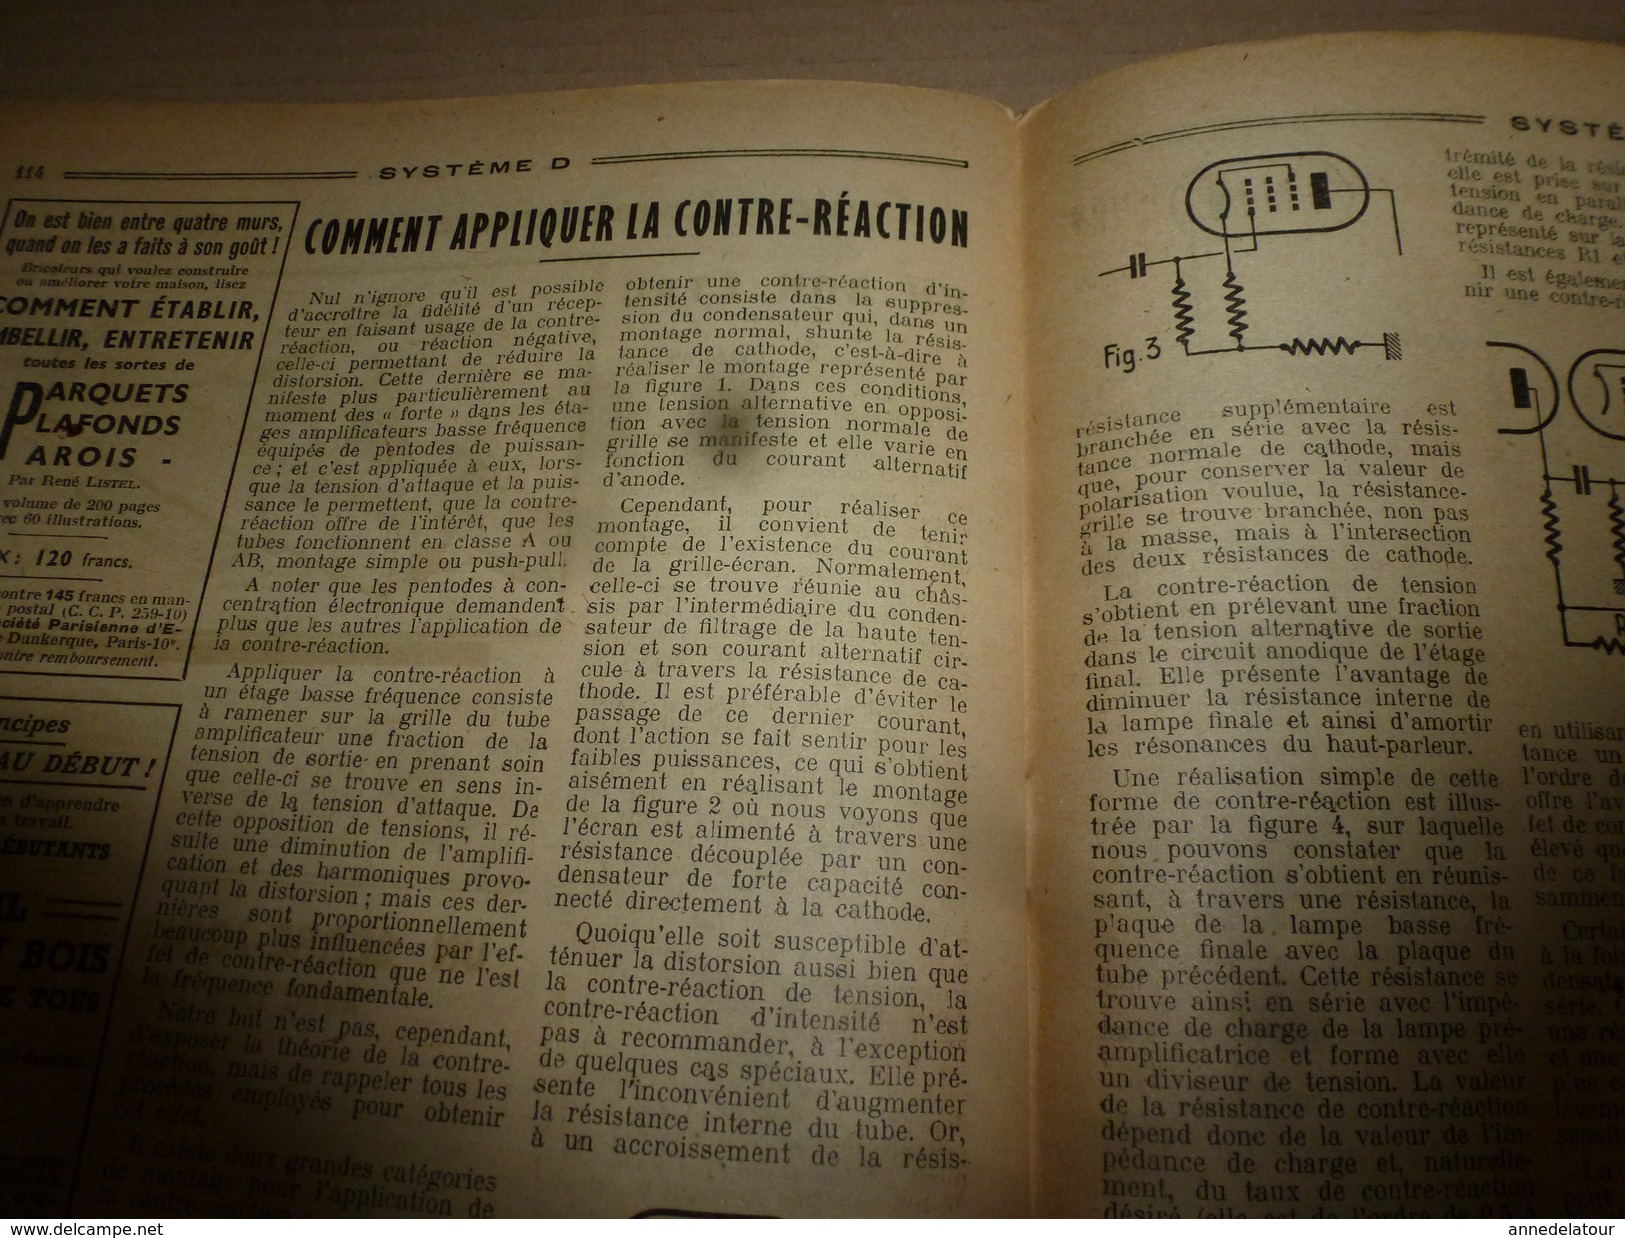 1949 TLSD :Faire-->Presse pour crer dalles ou carreaux de béton;Verre givré;Radiation mystérieuses qui guérissent; etc